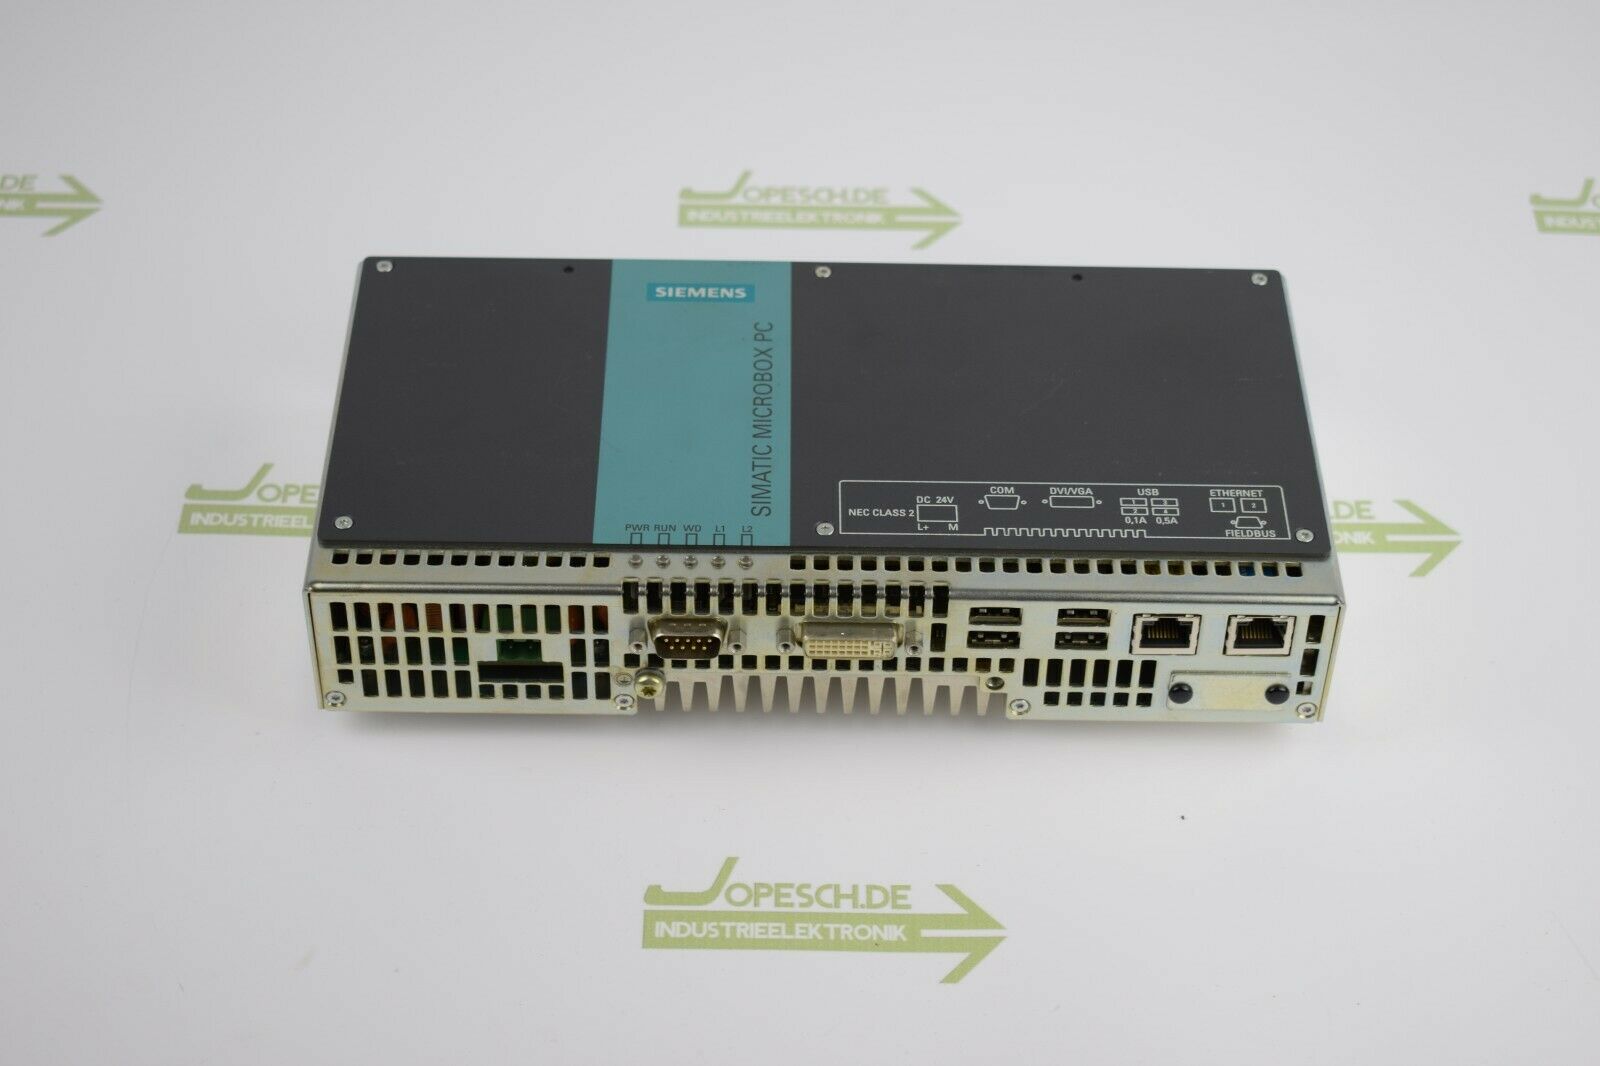 Siemens simatic Microbox PC 420 6AG4 040-0AA20-0NA0 ( 6AG4040-0AA20-0NA0 )